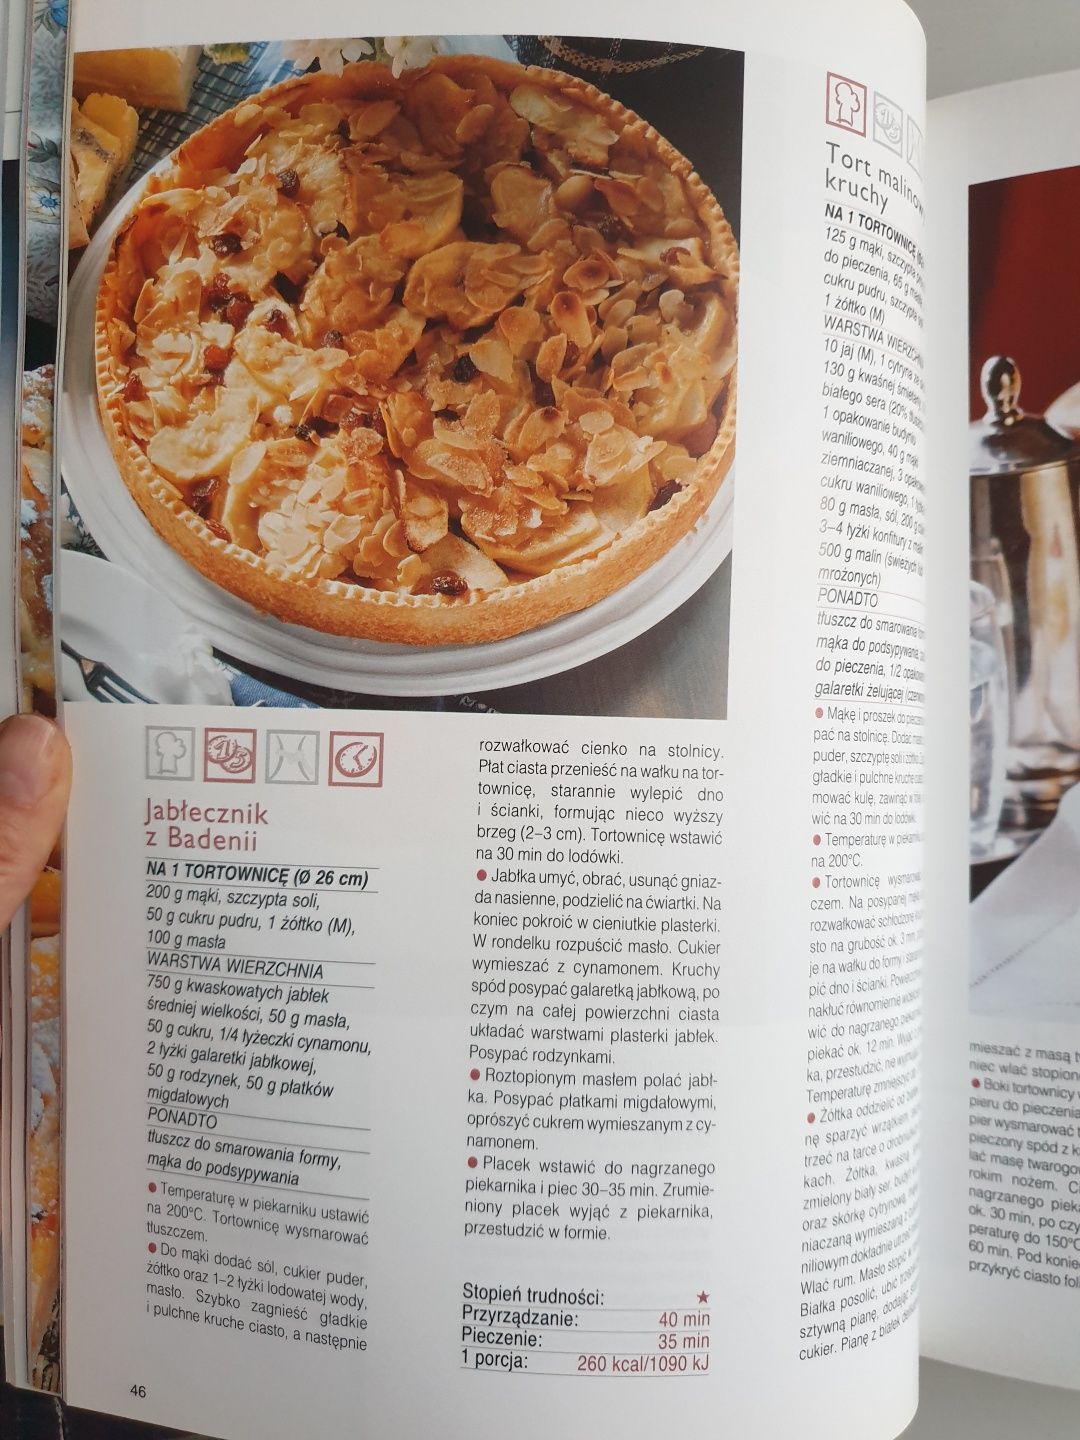 Wielka księga ciast + Encyklopedia smakosza wypieki